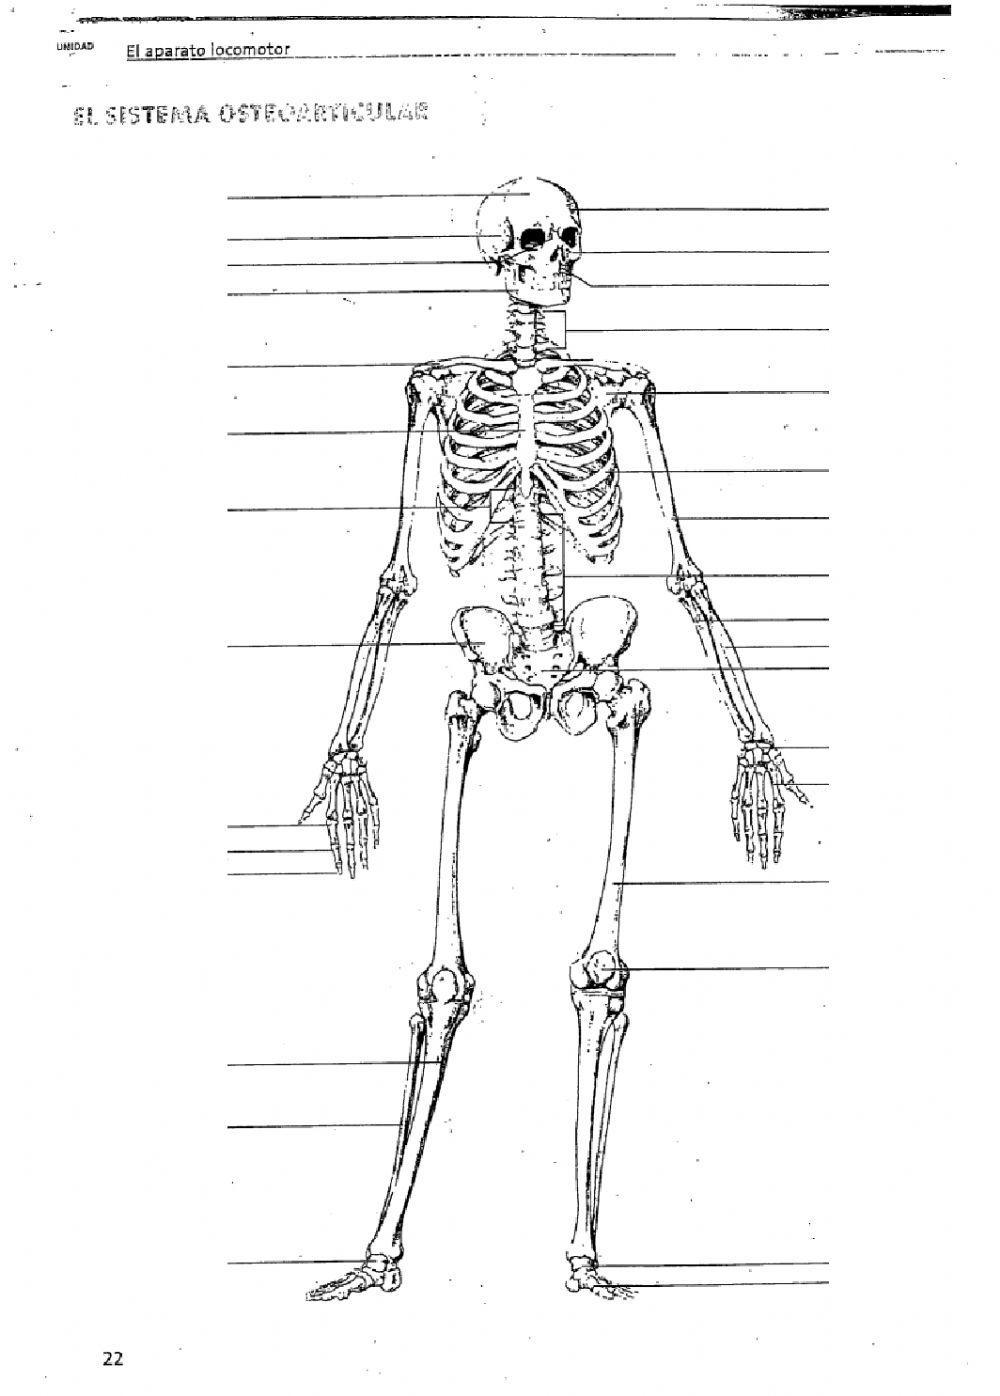 Huesos y músculos